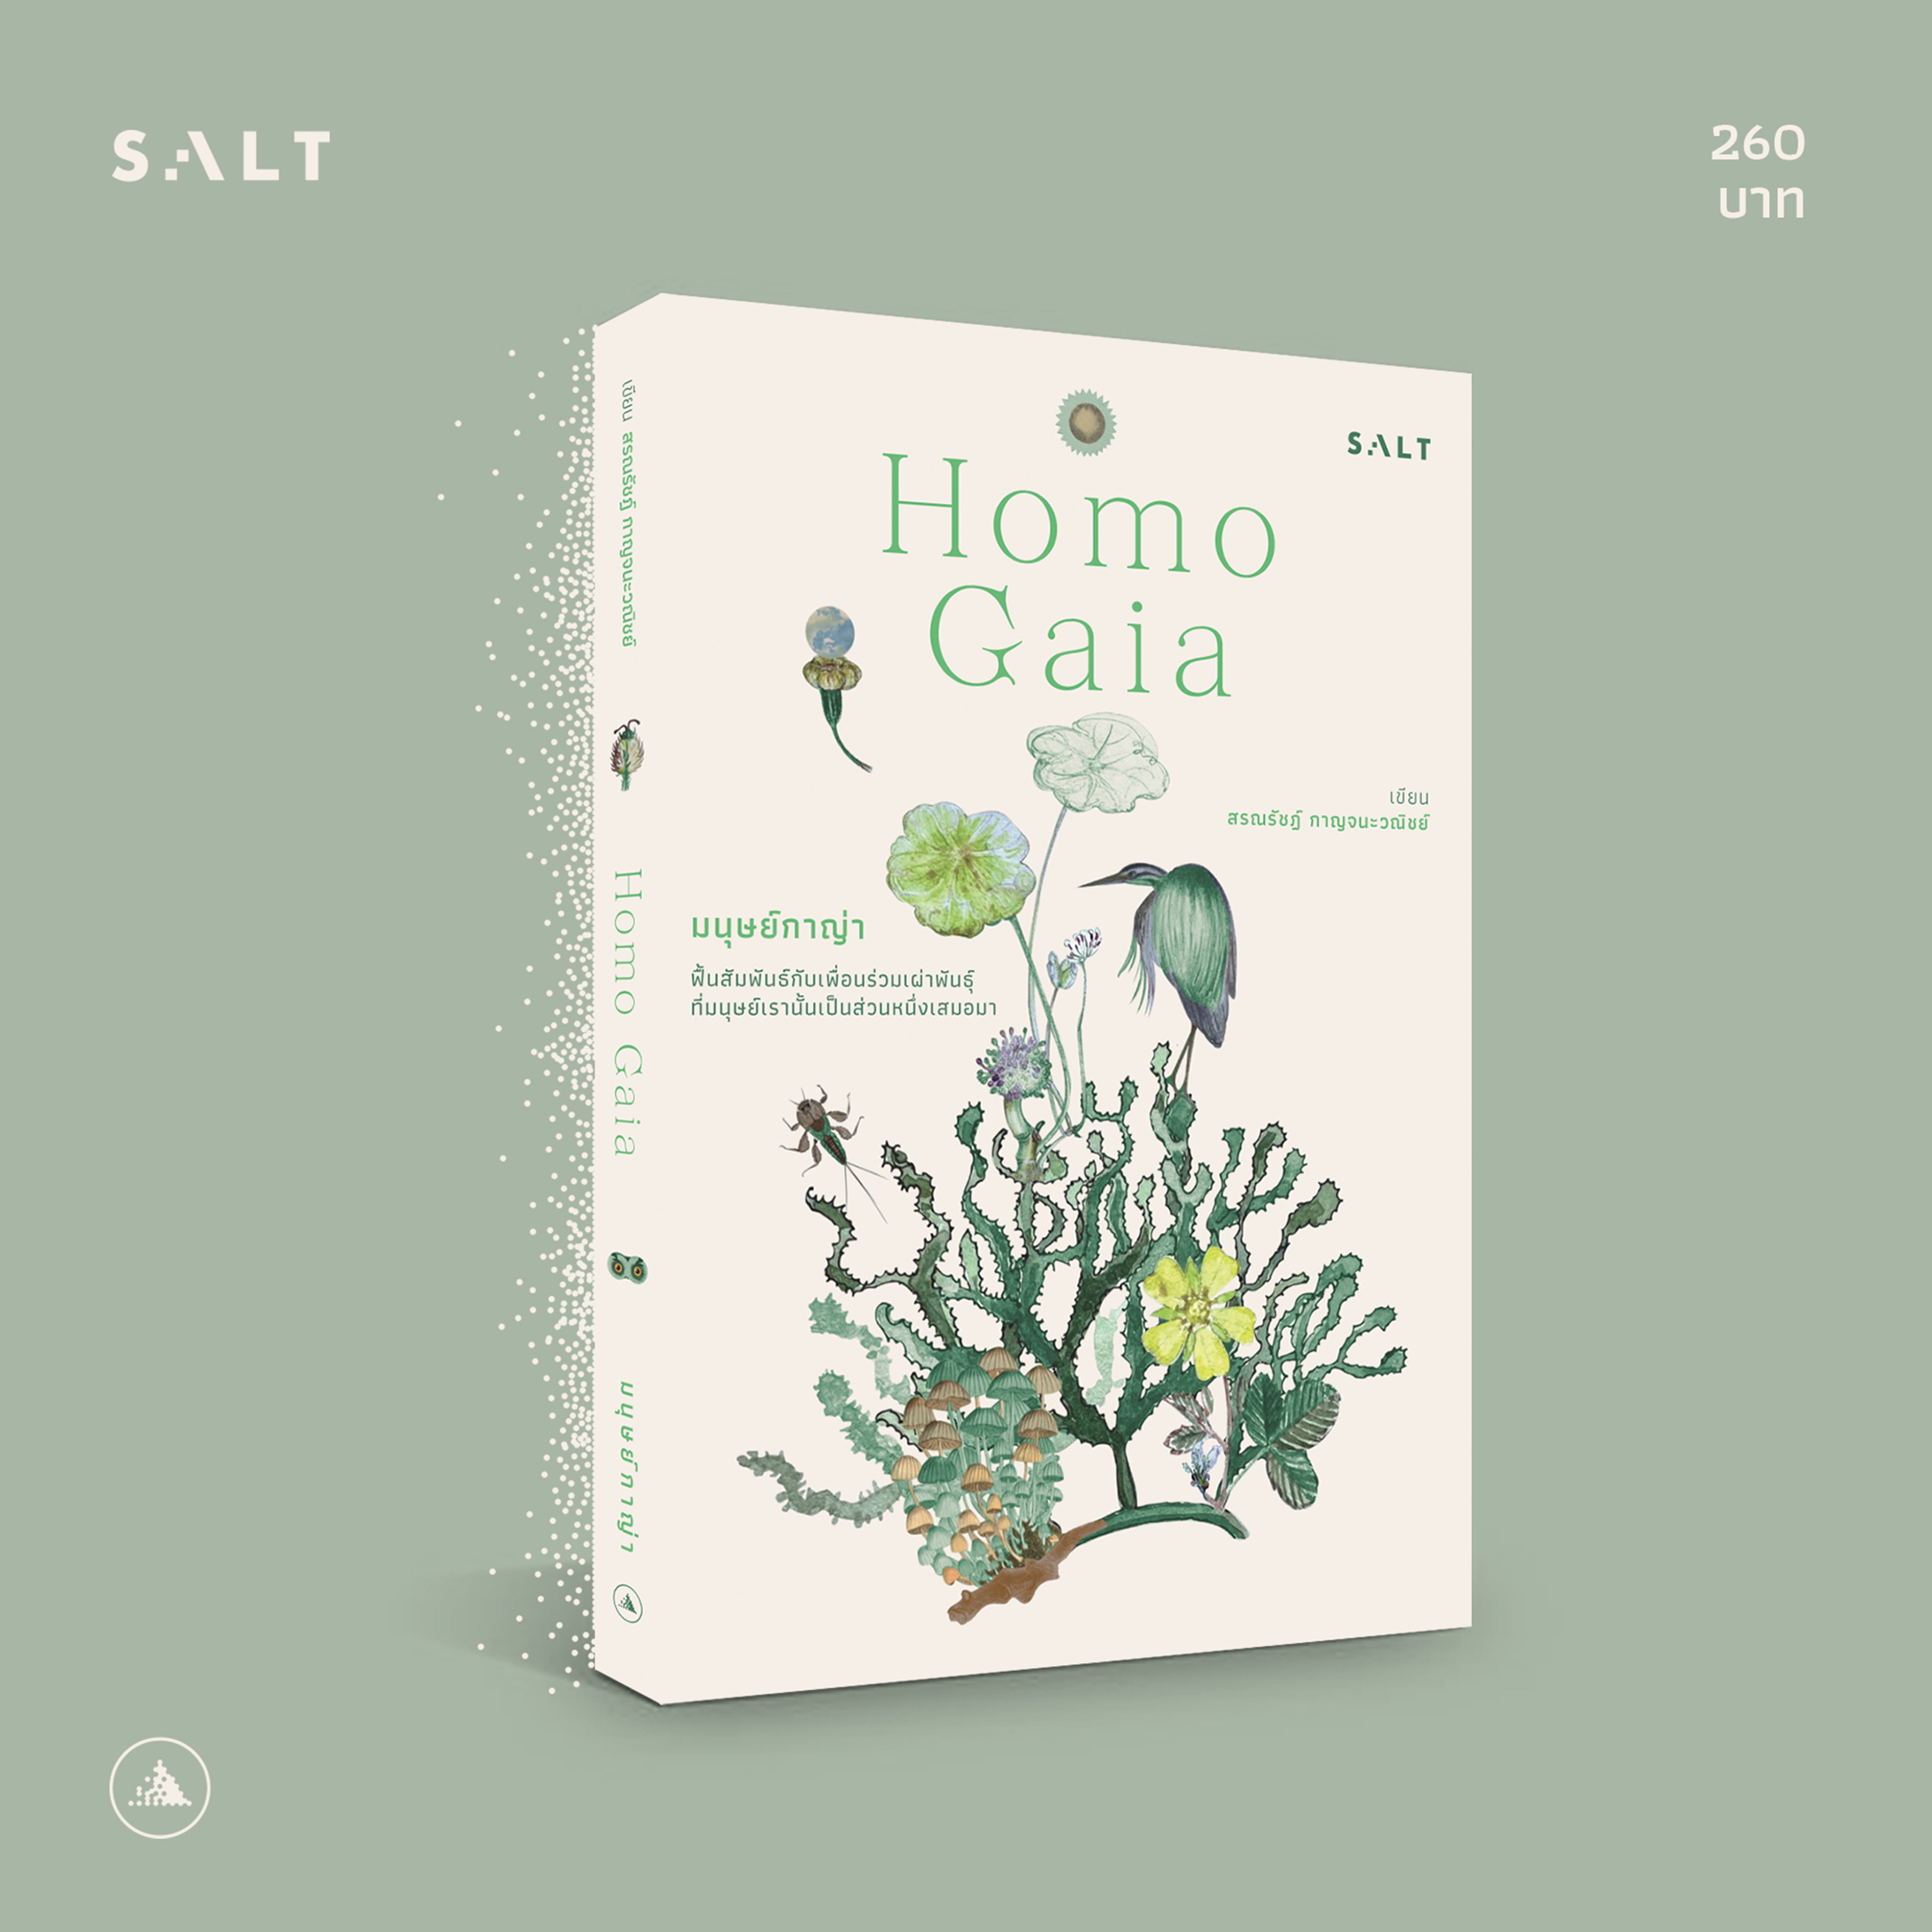 Homo Gaia